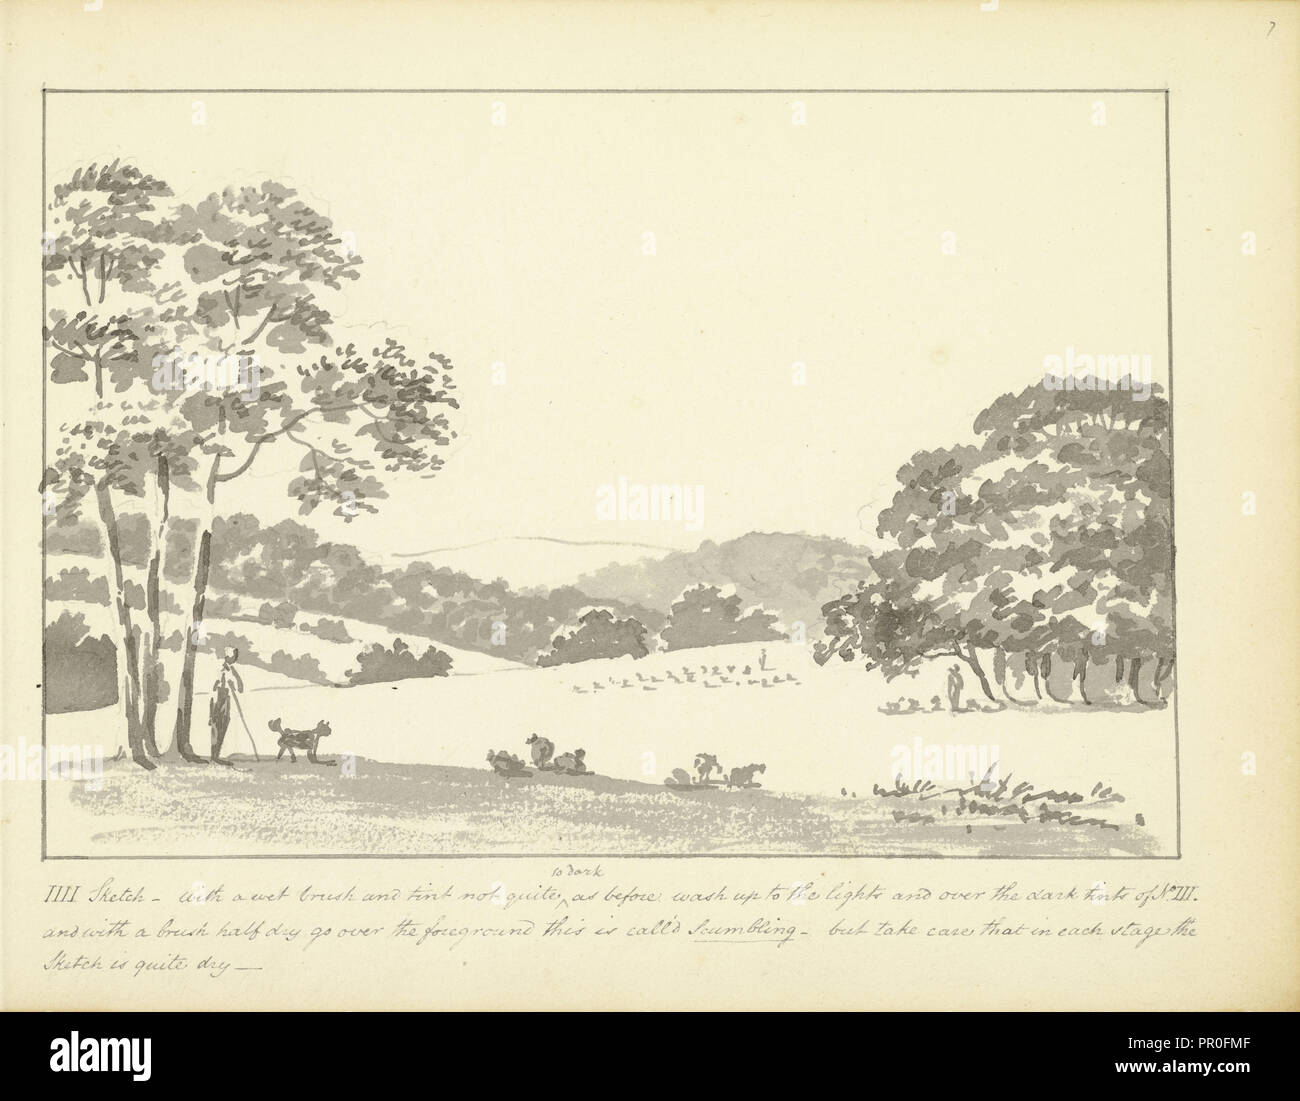 IIII - Sketch con un pincel mojado y matiz, unos cuantos consejos sobre paisaje bocetos, ca. 1810, Humphry Repton arquitectura Foto de stock